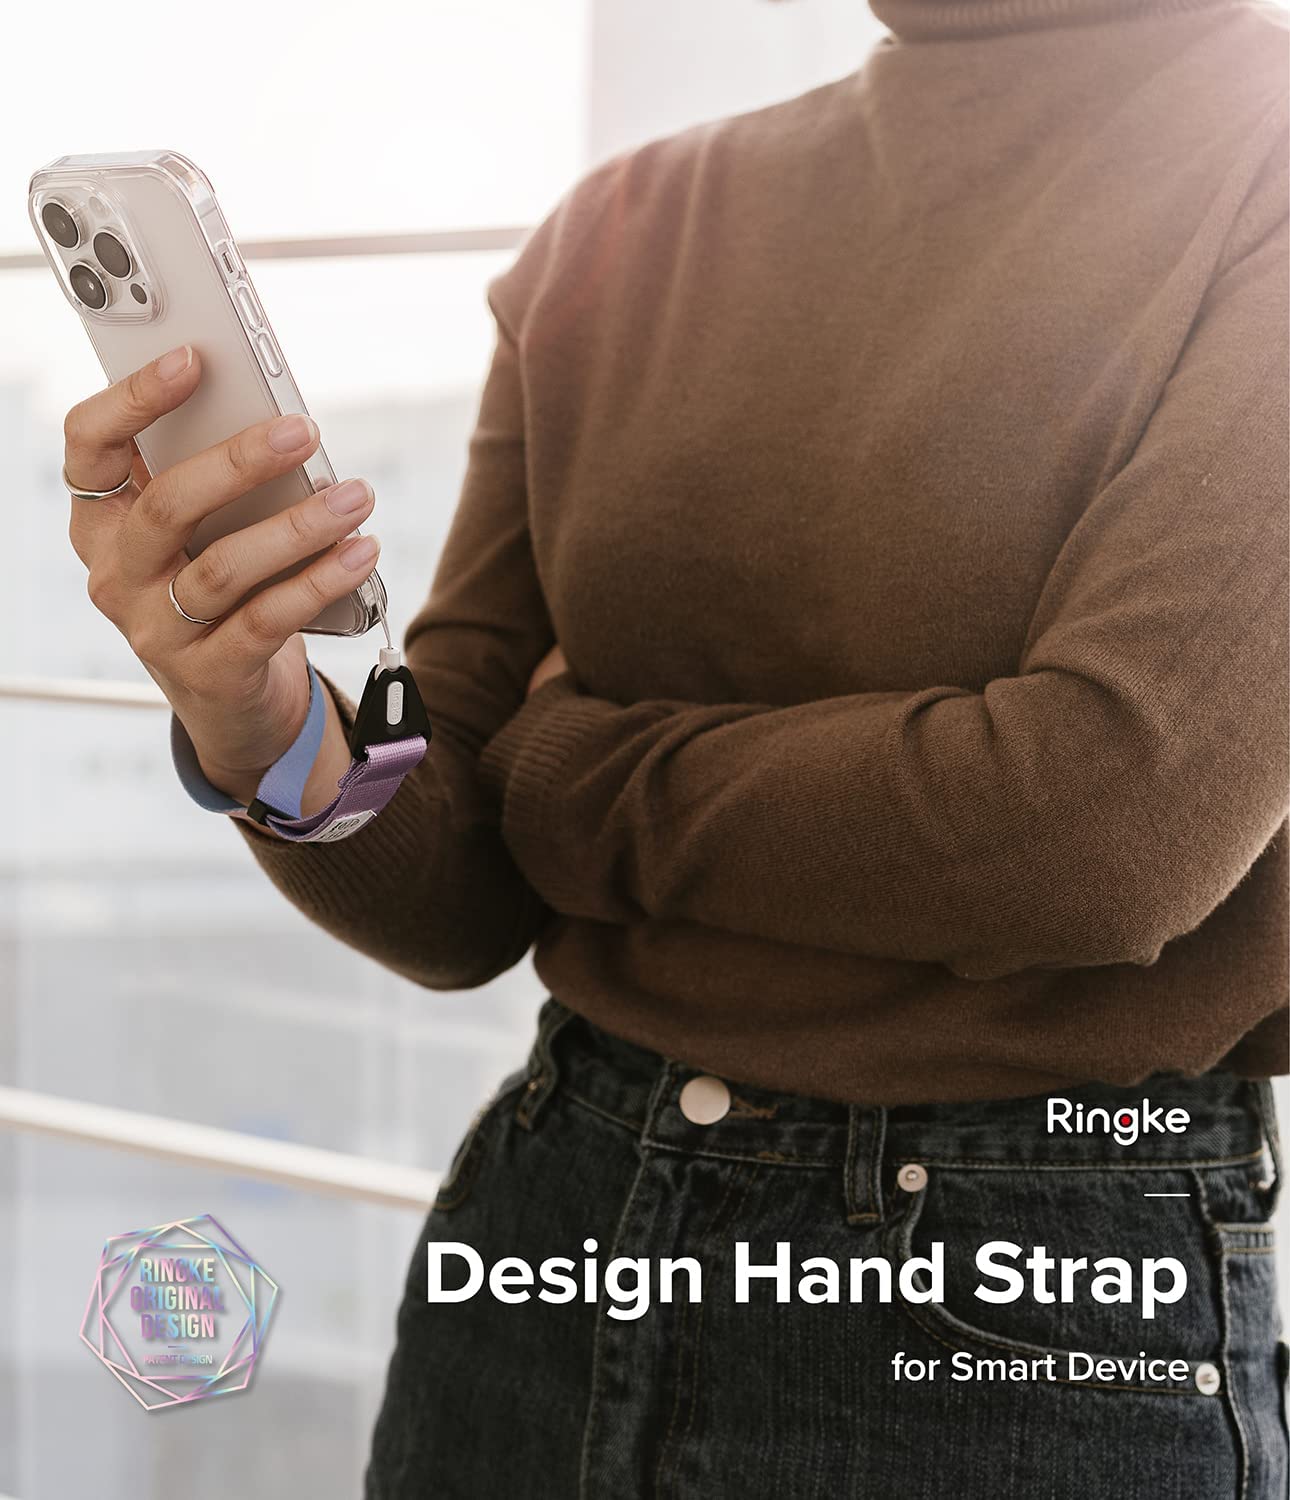 Correa Ringke Design Aurora Hand Strap